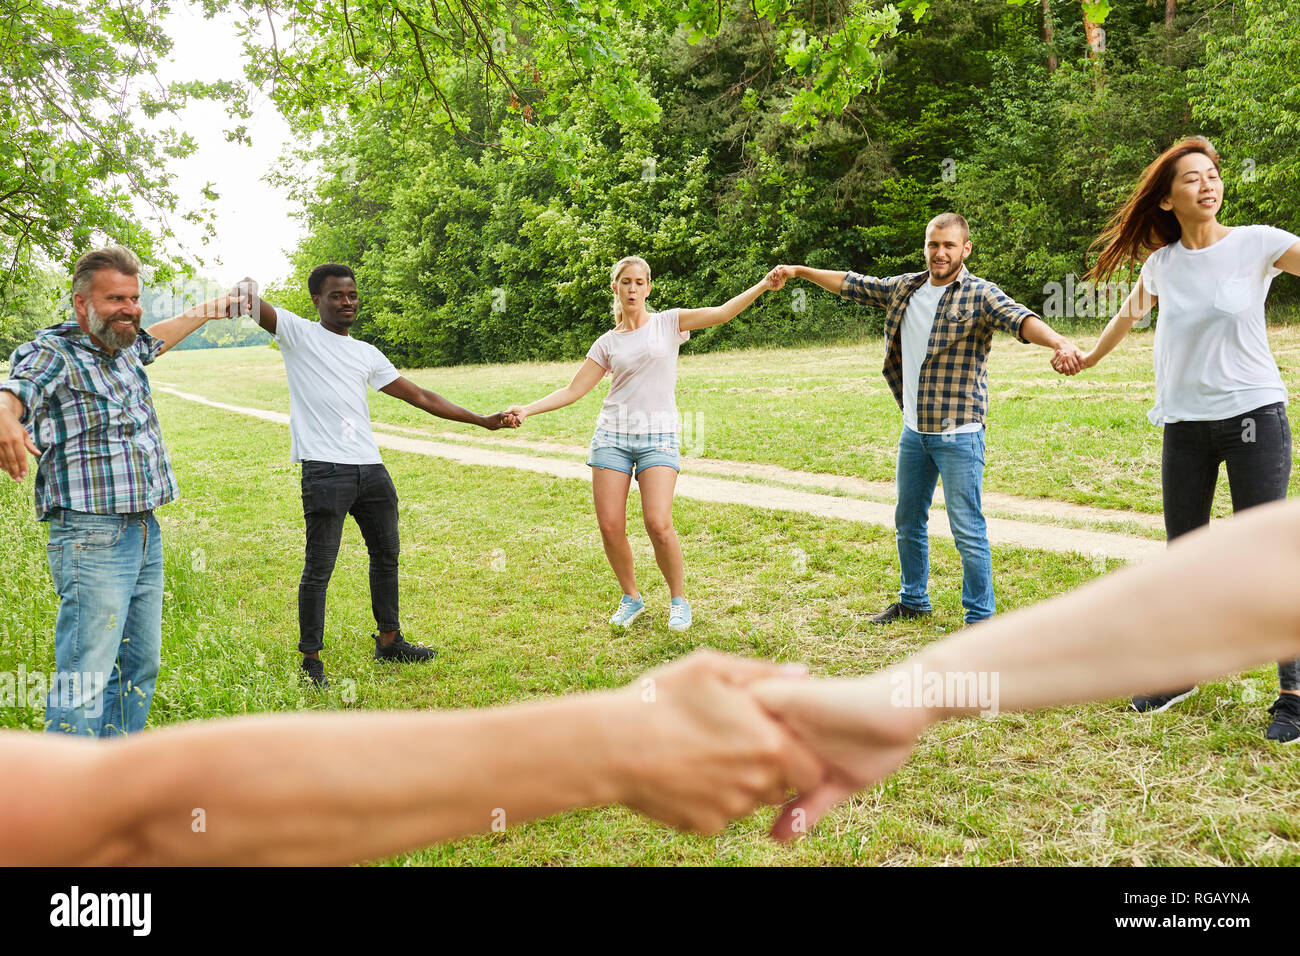 Les jeunes heureuse équipe forme un cercle dans le parc dans un atelier teambuilding Banque D'Images